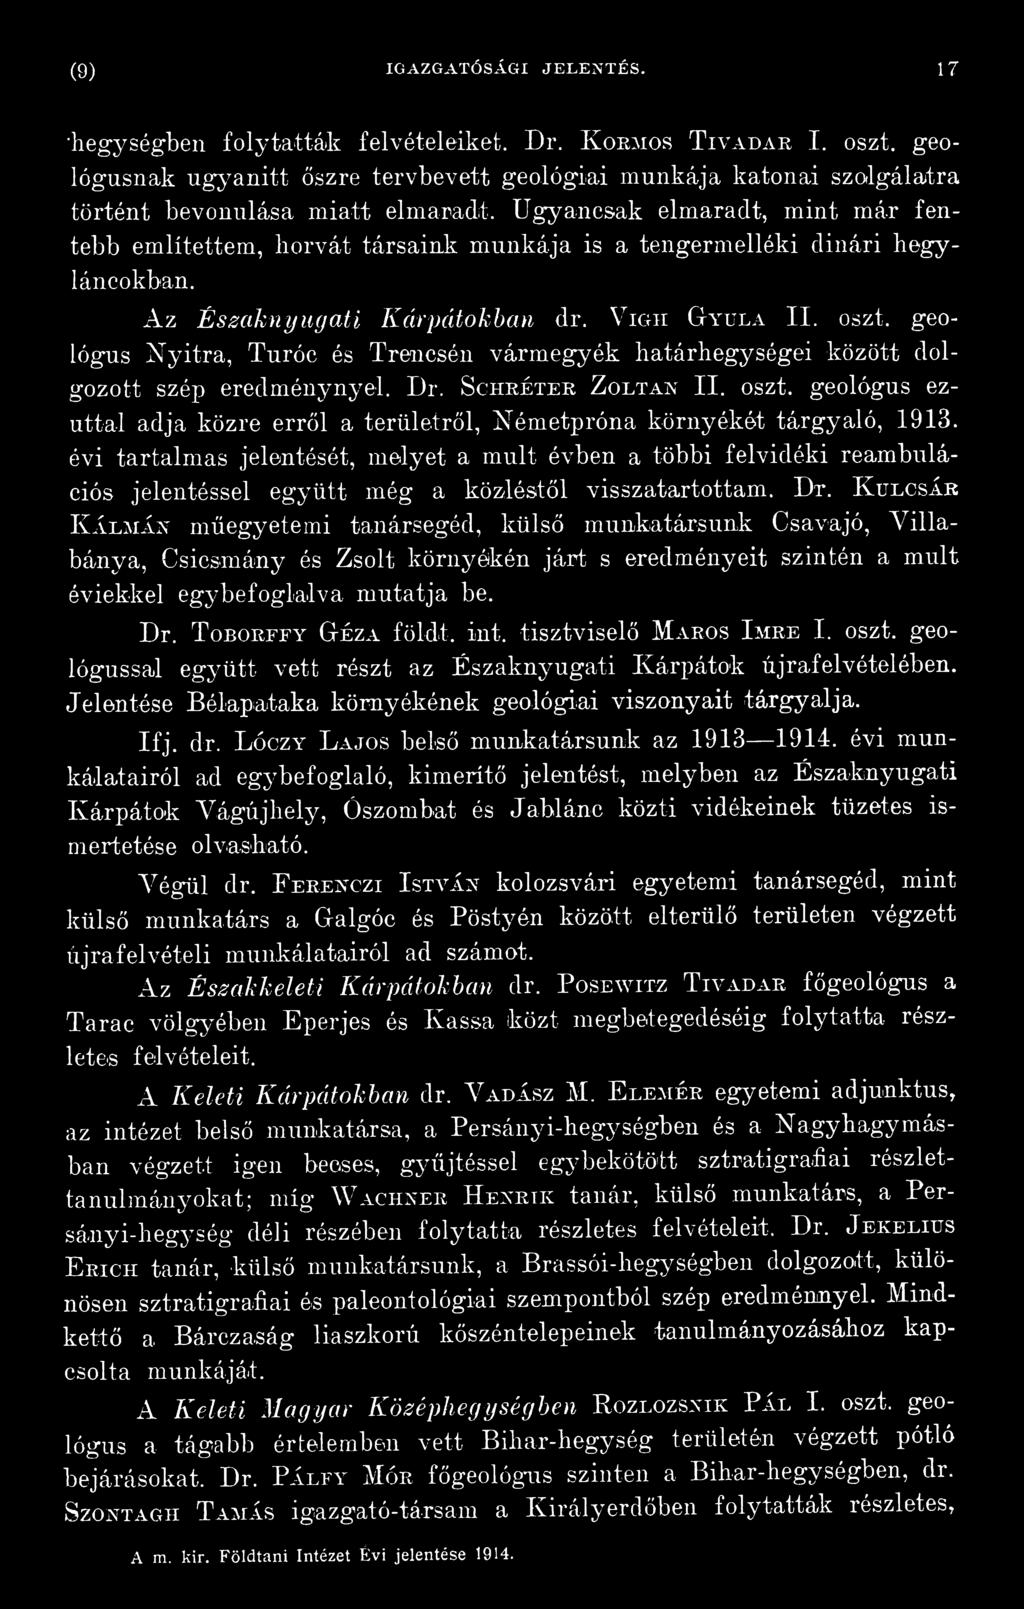 geológus ezúttal adja közre erről a területről, Németpróna környékét tárgyaló, 1913.